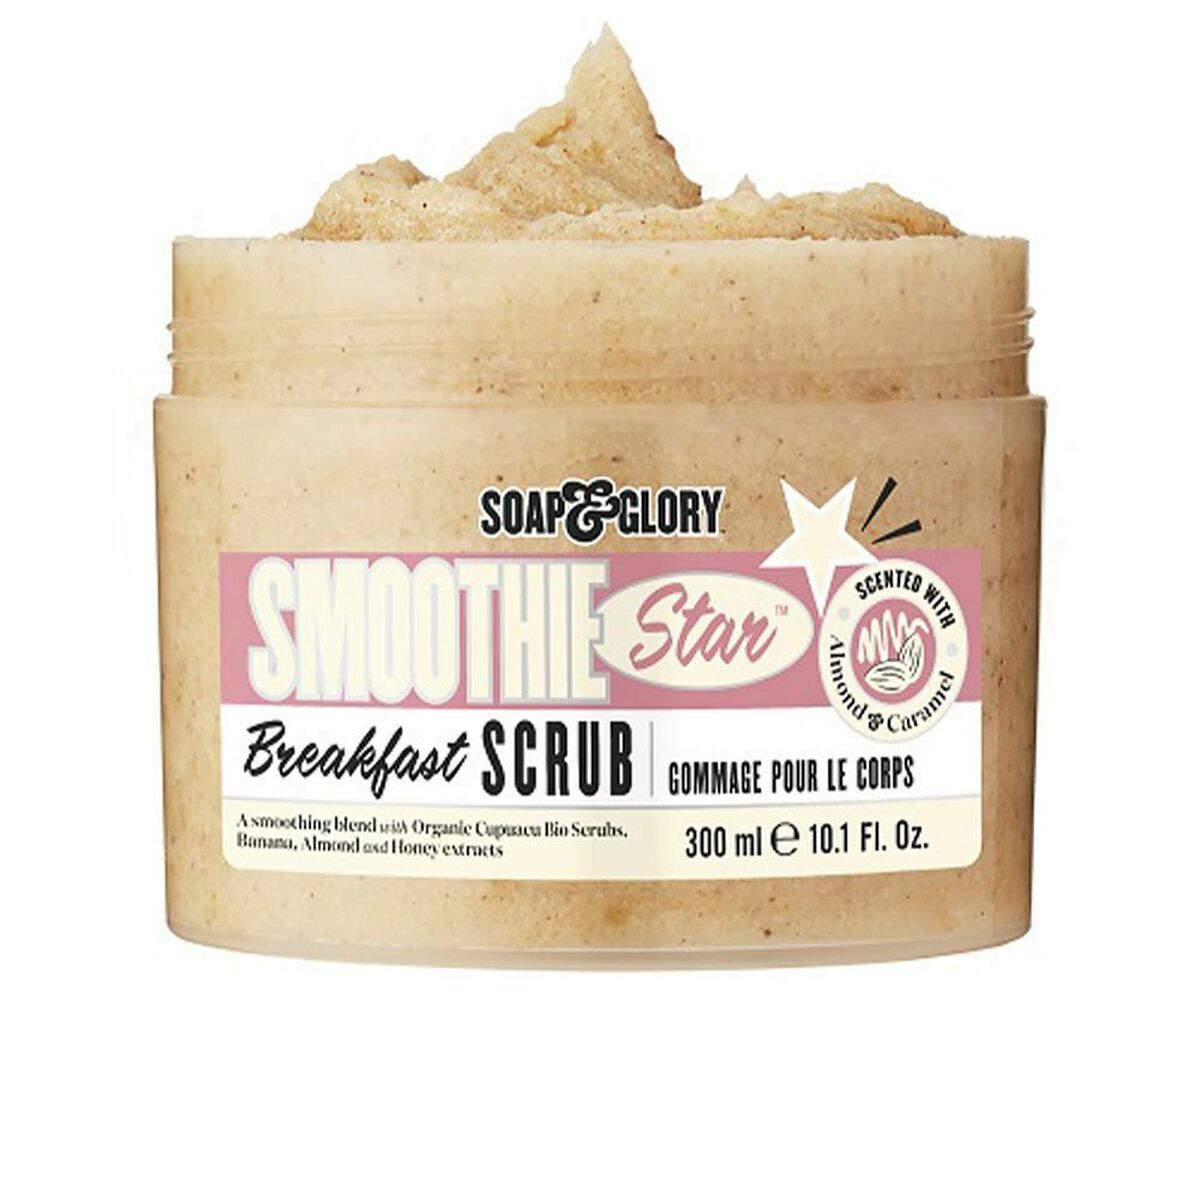 Body Exfoliator Soap & Glory Smoothie Star Breakfast (300 ml) - Calm Beauty IE